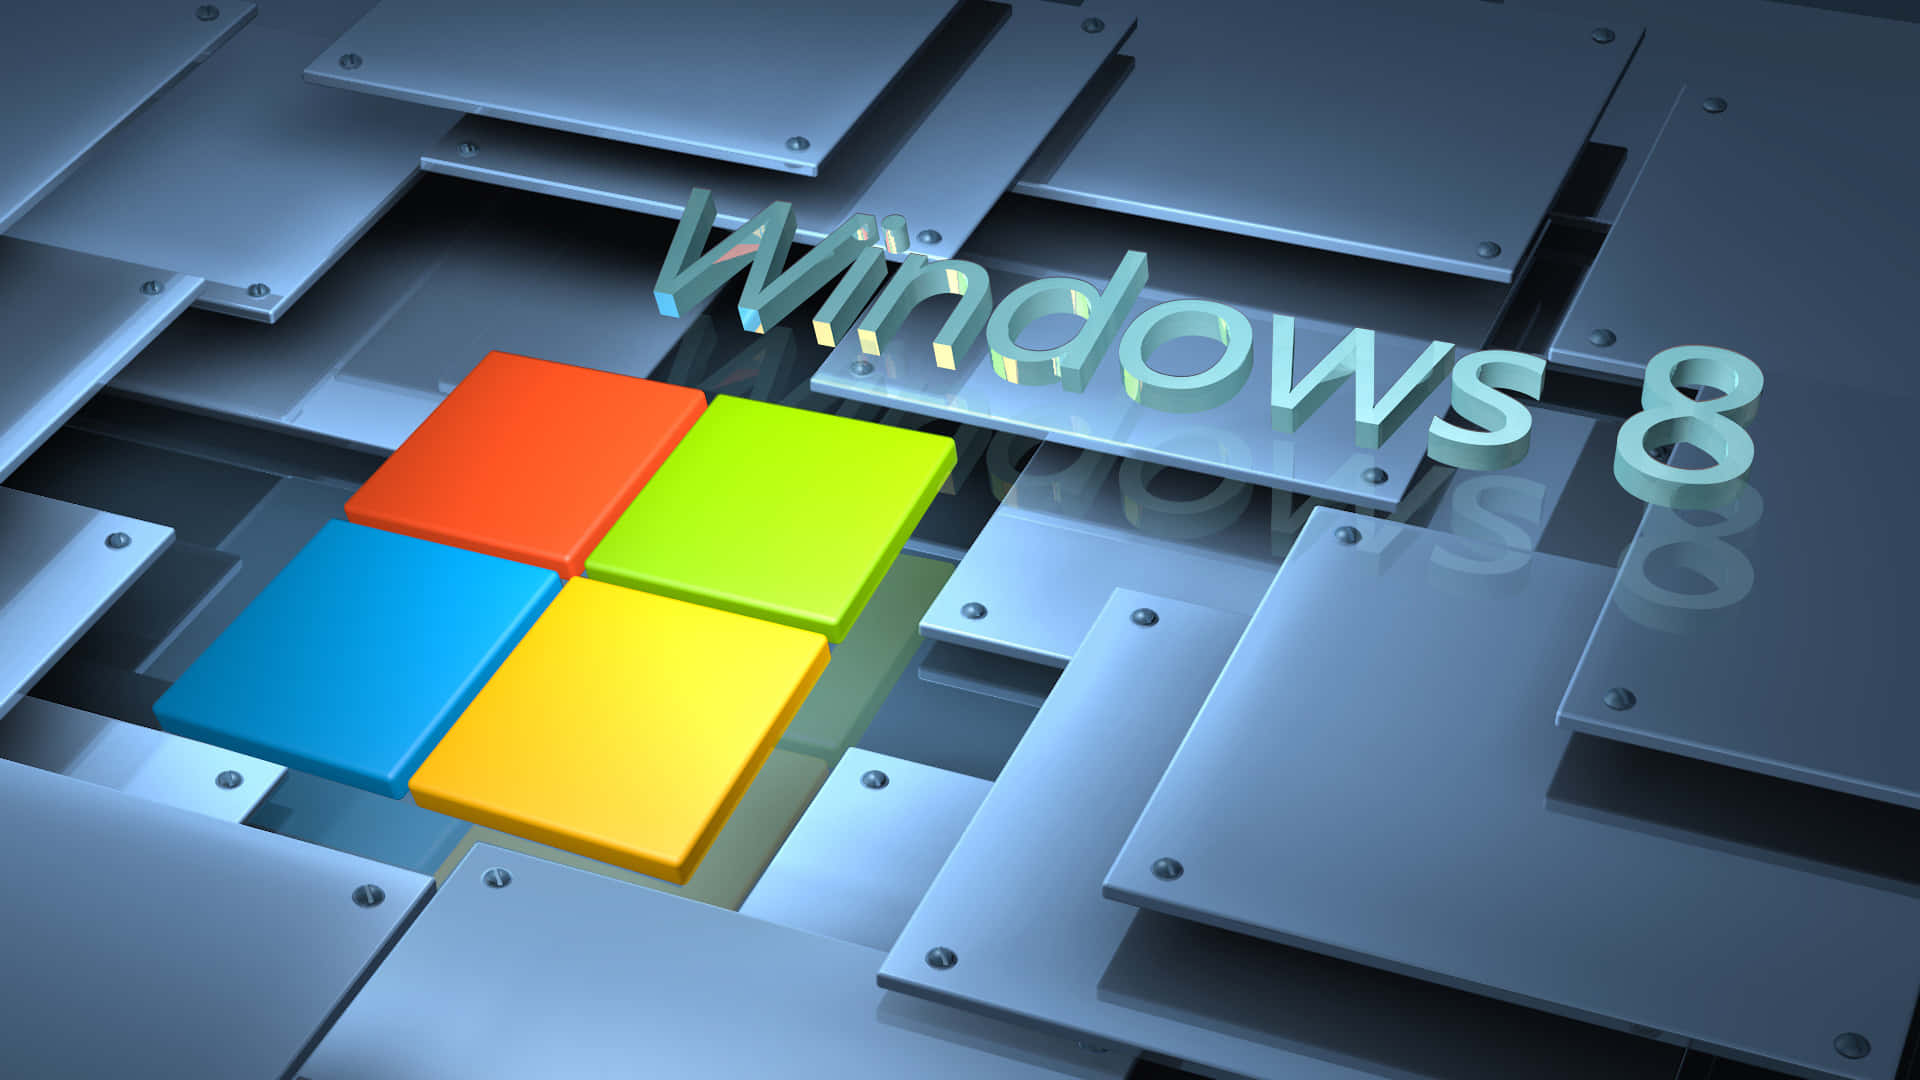 Sfondogeometrico Elegante Per Windows 8